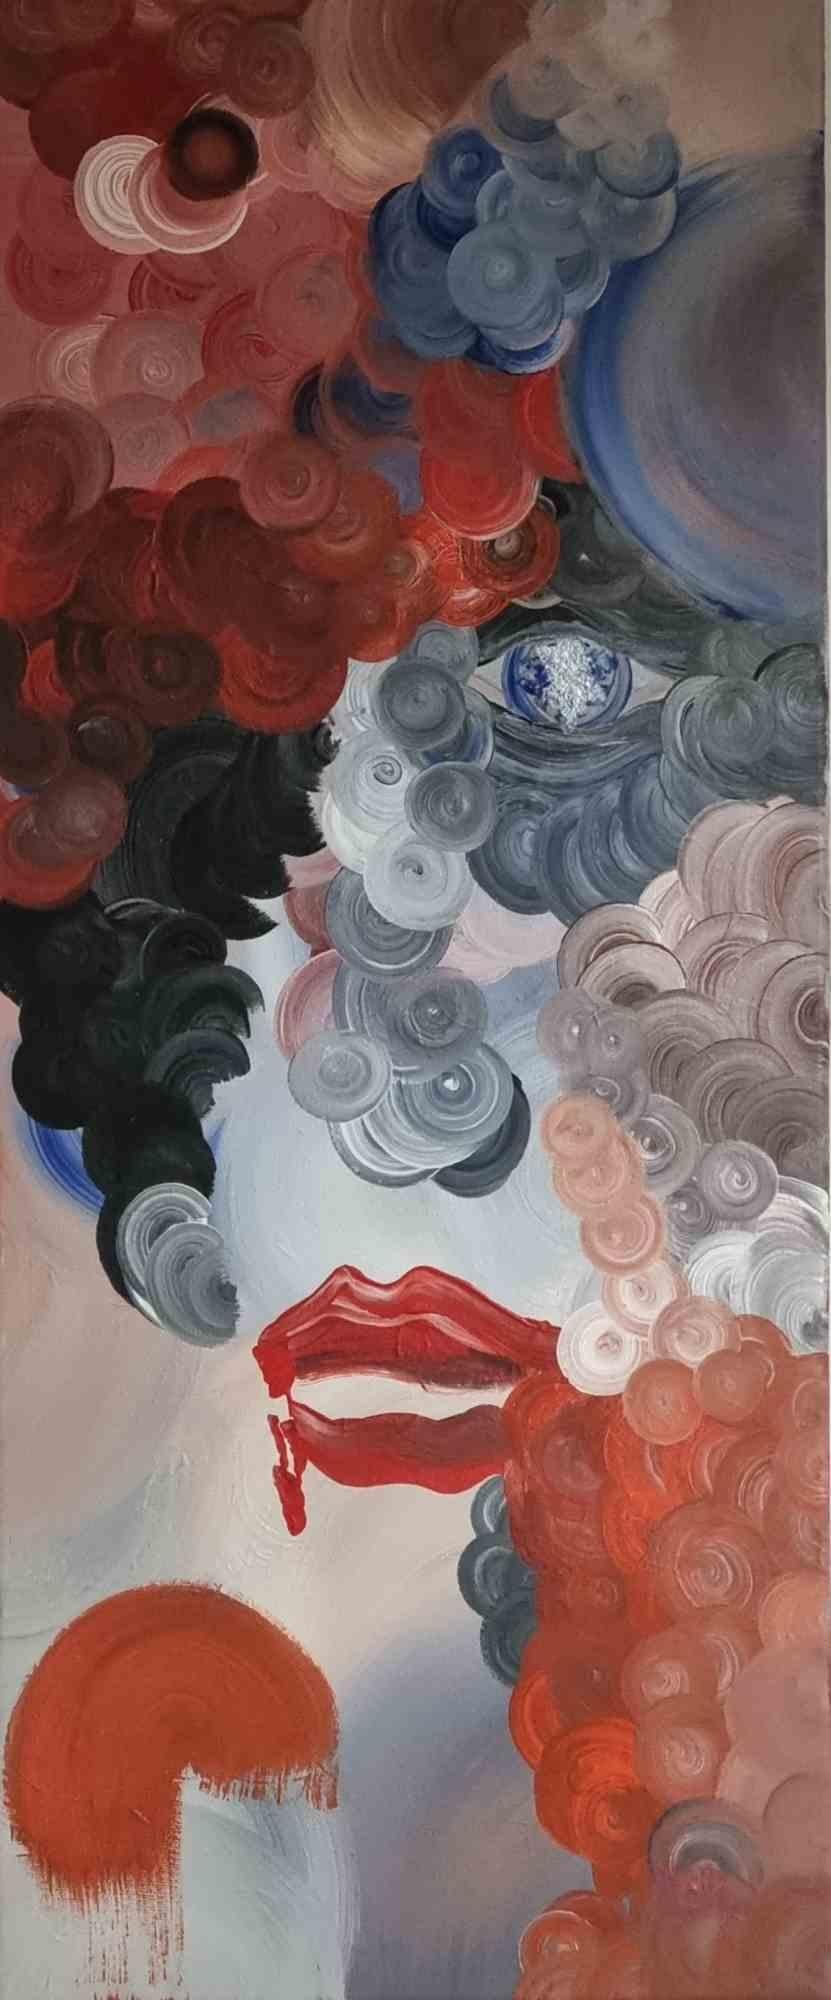 La signora del Quinto Piano - Acrylic on Canvas by Lillo Sauto - 2017